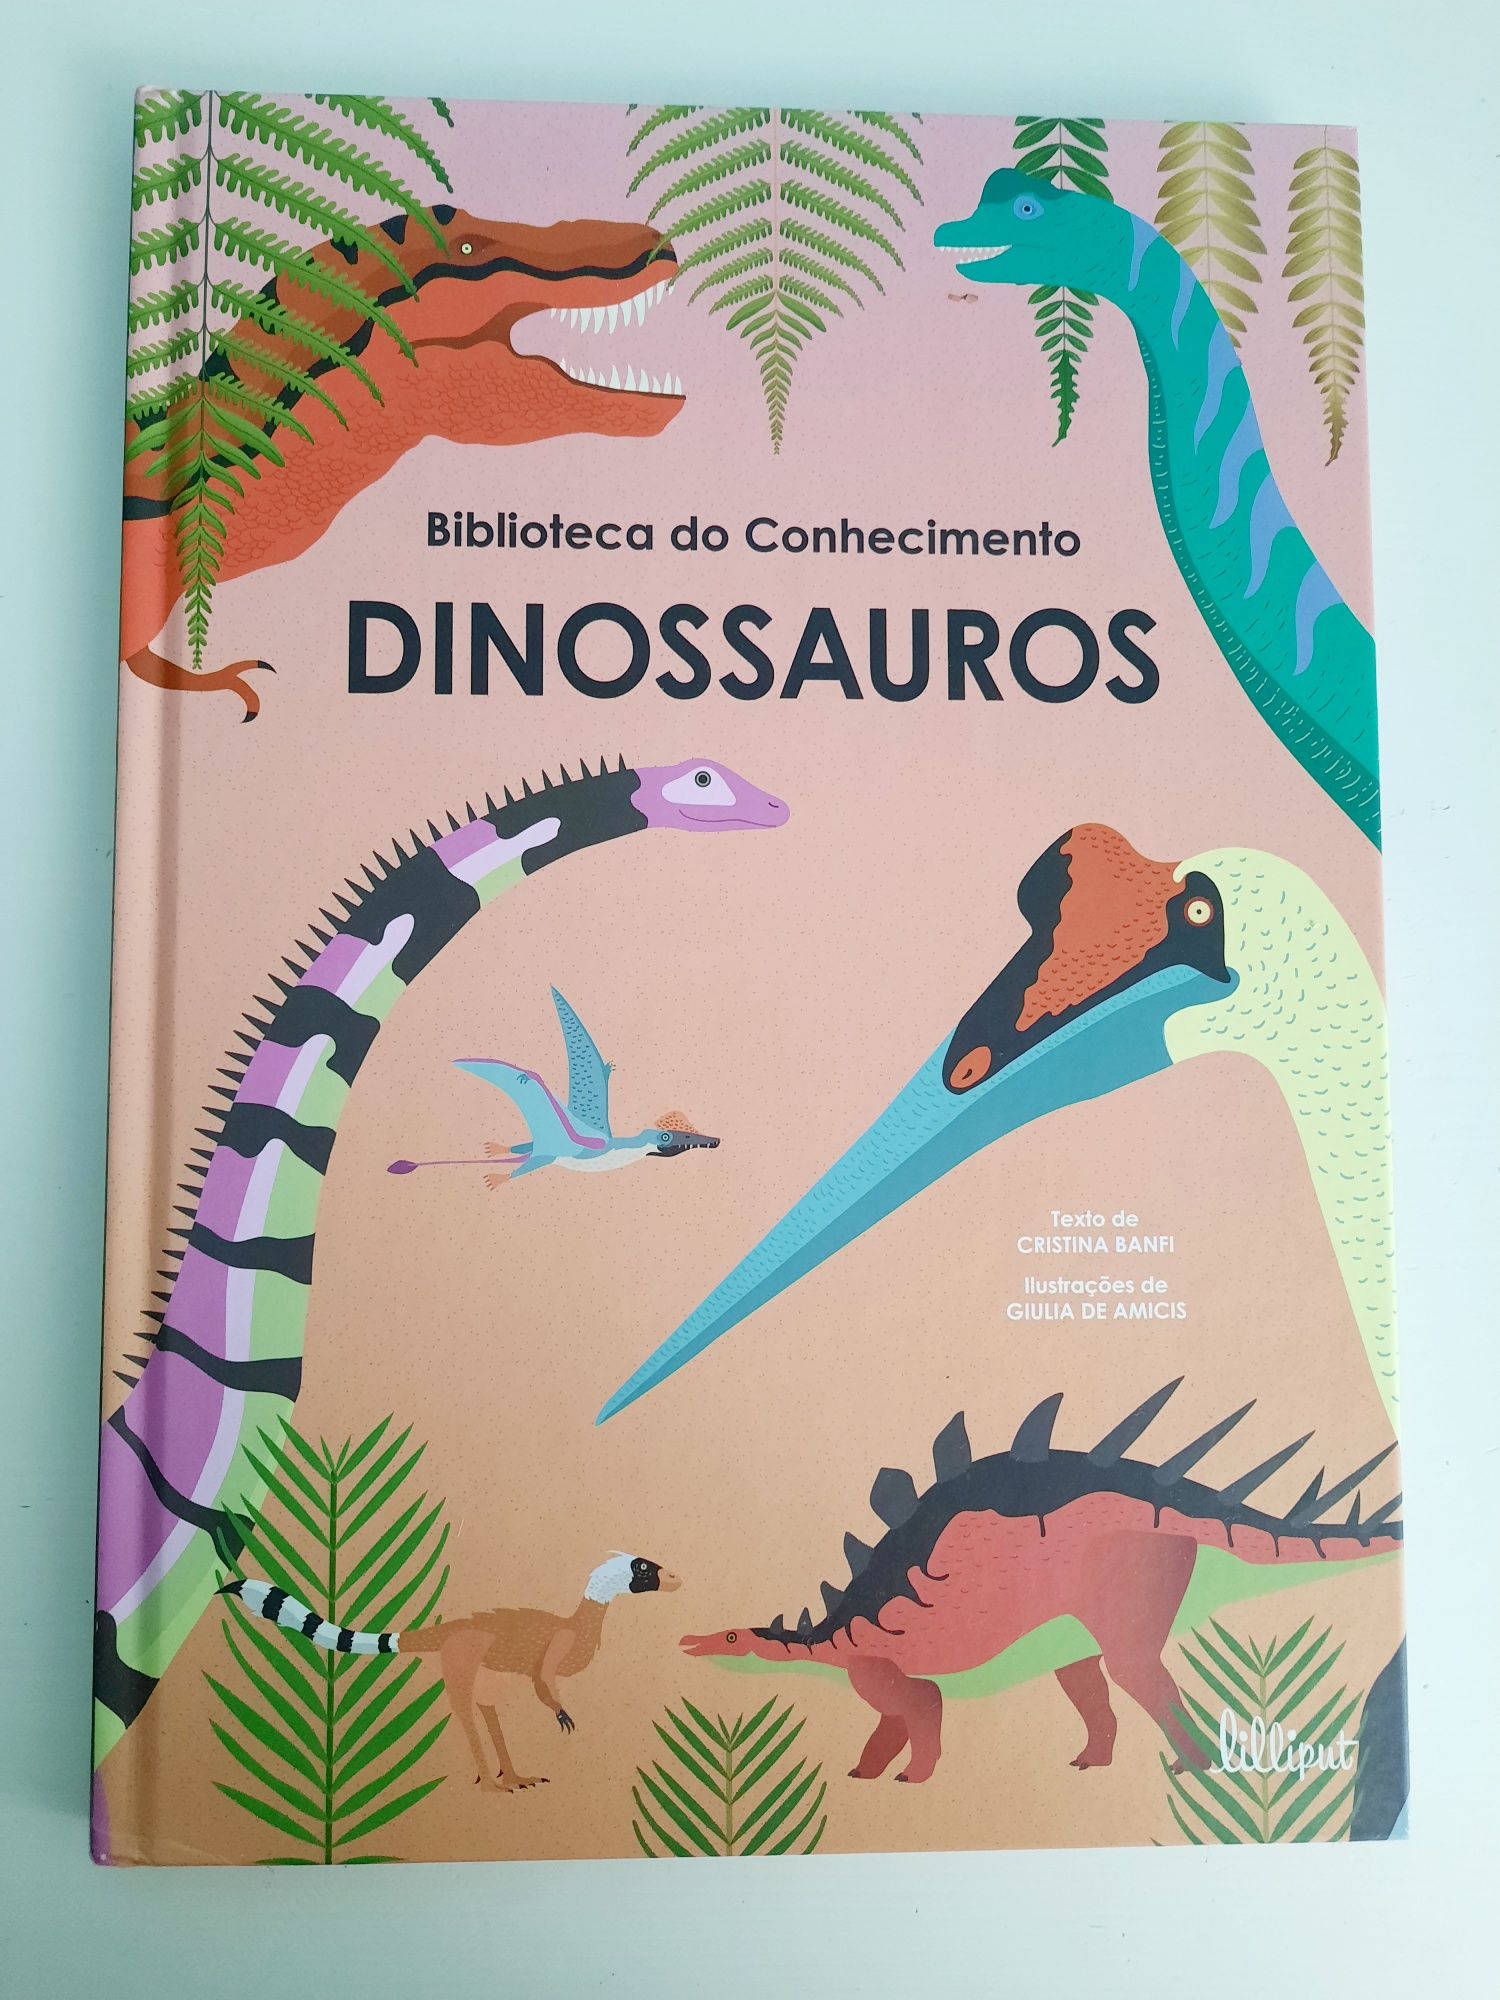 Dinossauros /Cristina Banfi, Biblioteca do Conhecimento, N.º 3